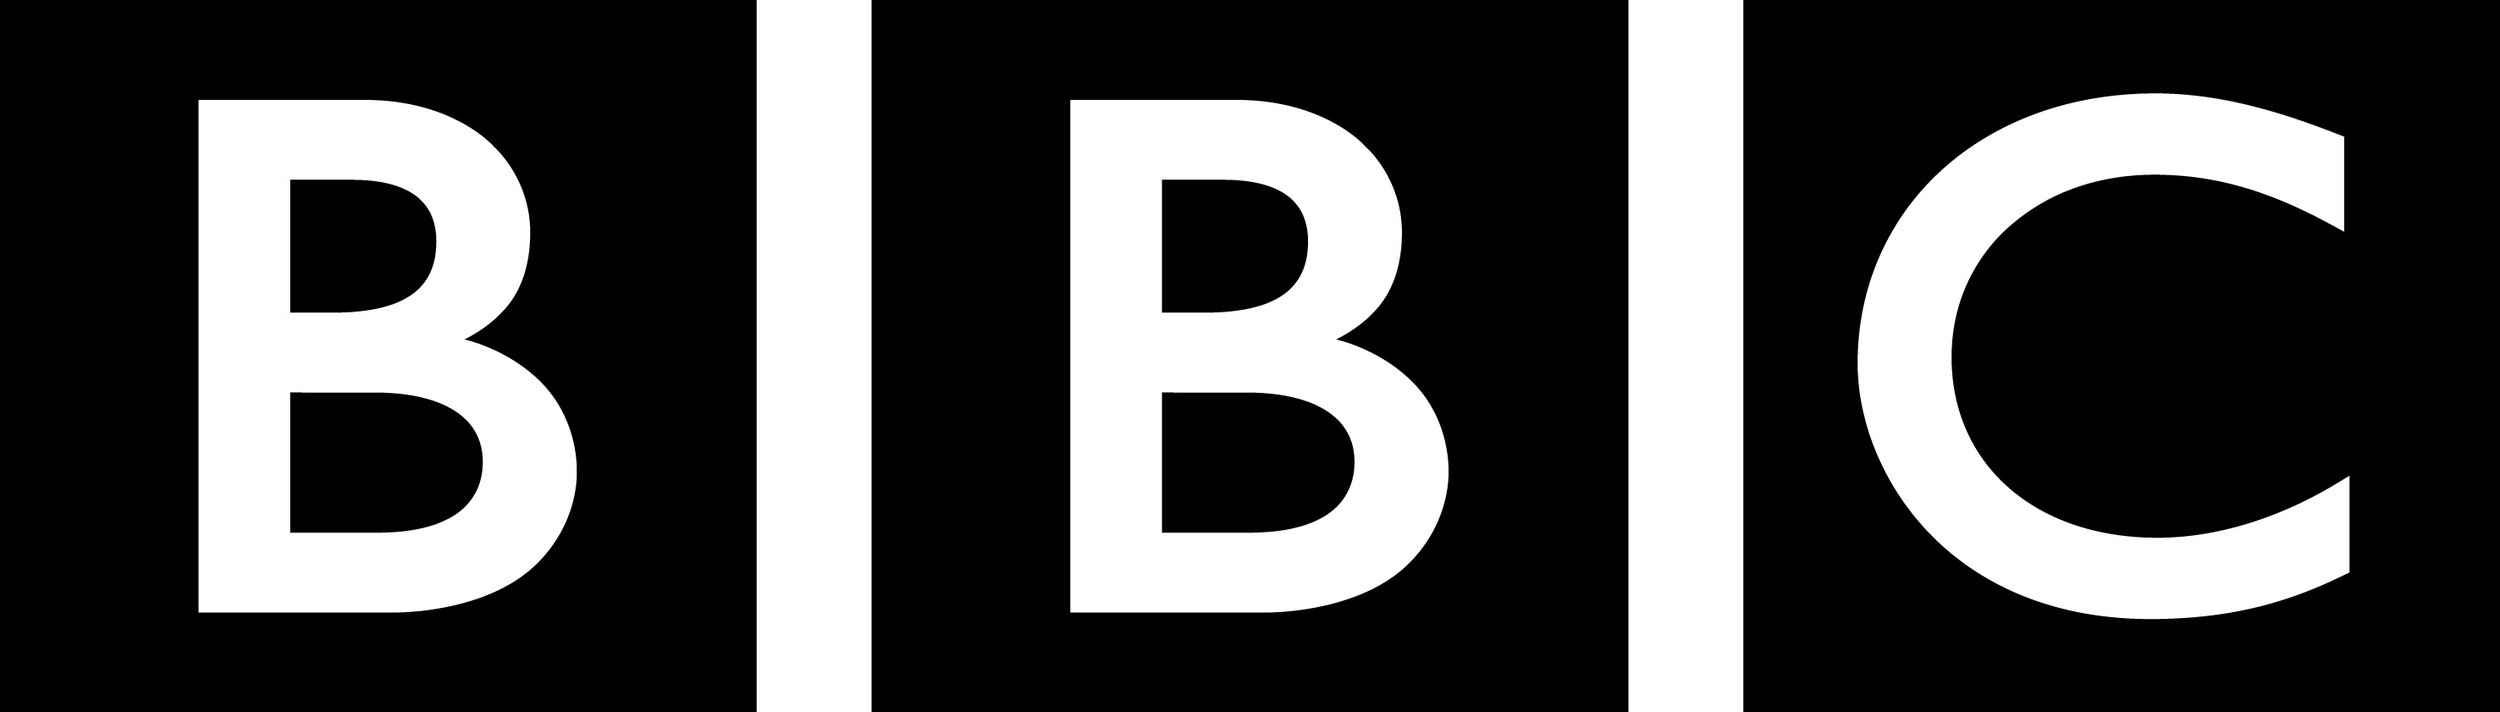 BBC-logo.jpg